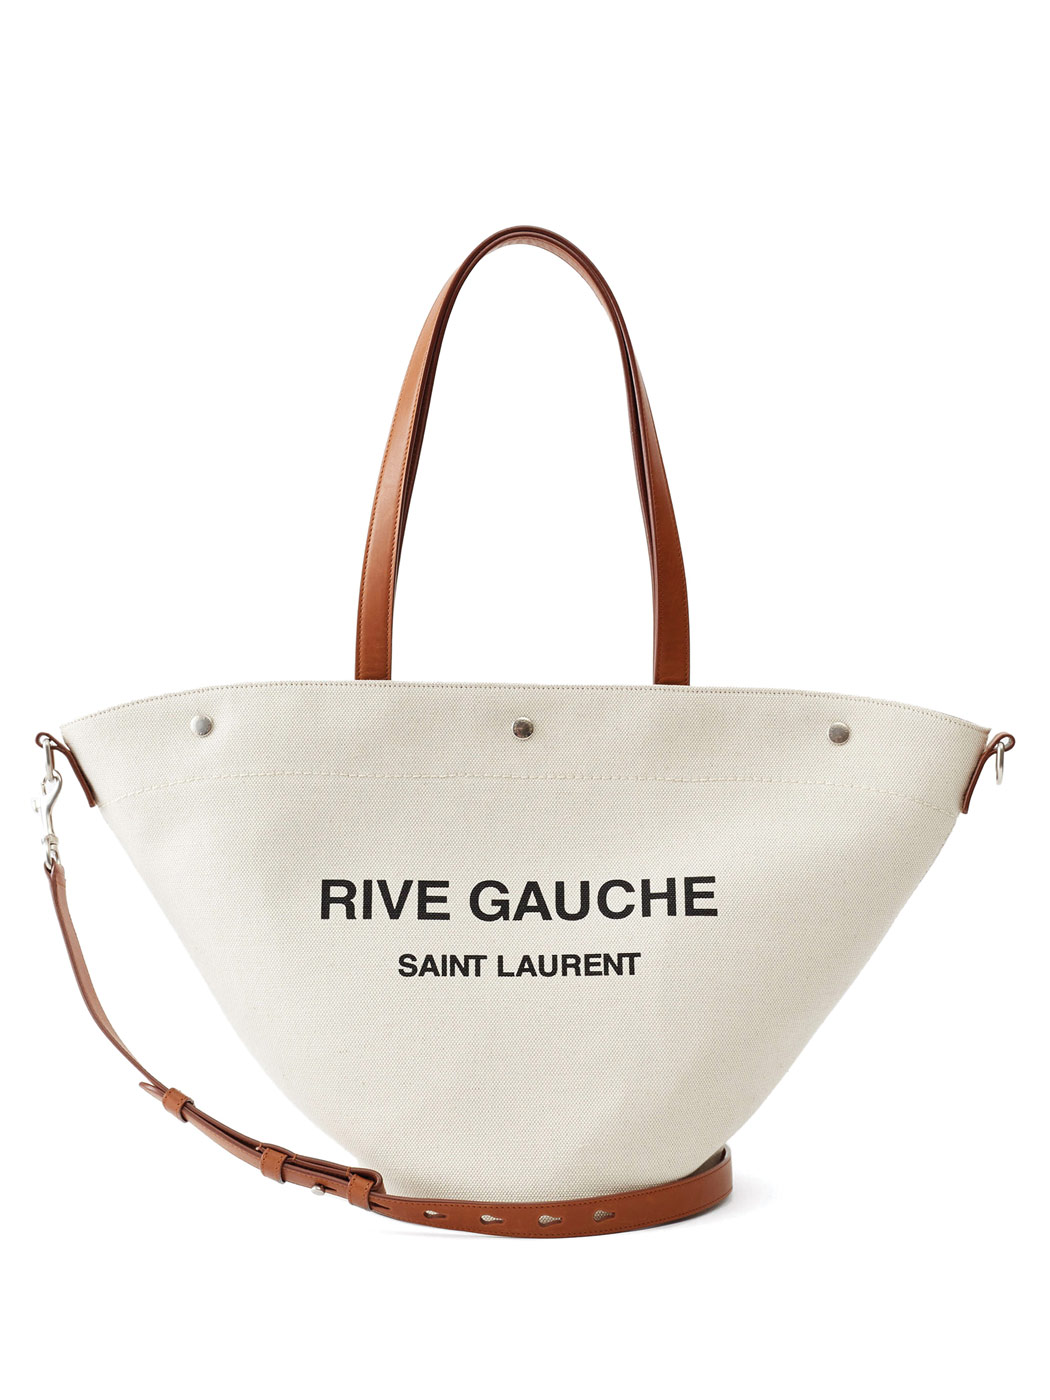 32 Saint Laurent, Rive Gauche Canvas Tote Bag, Matchesfashion.com Us